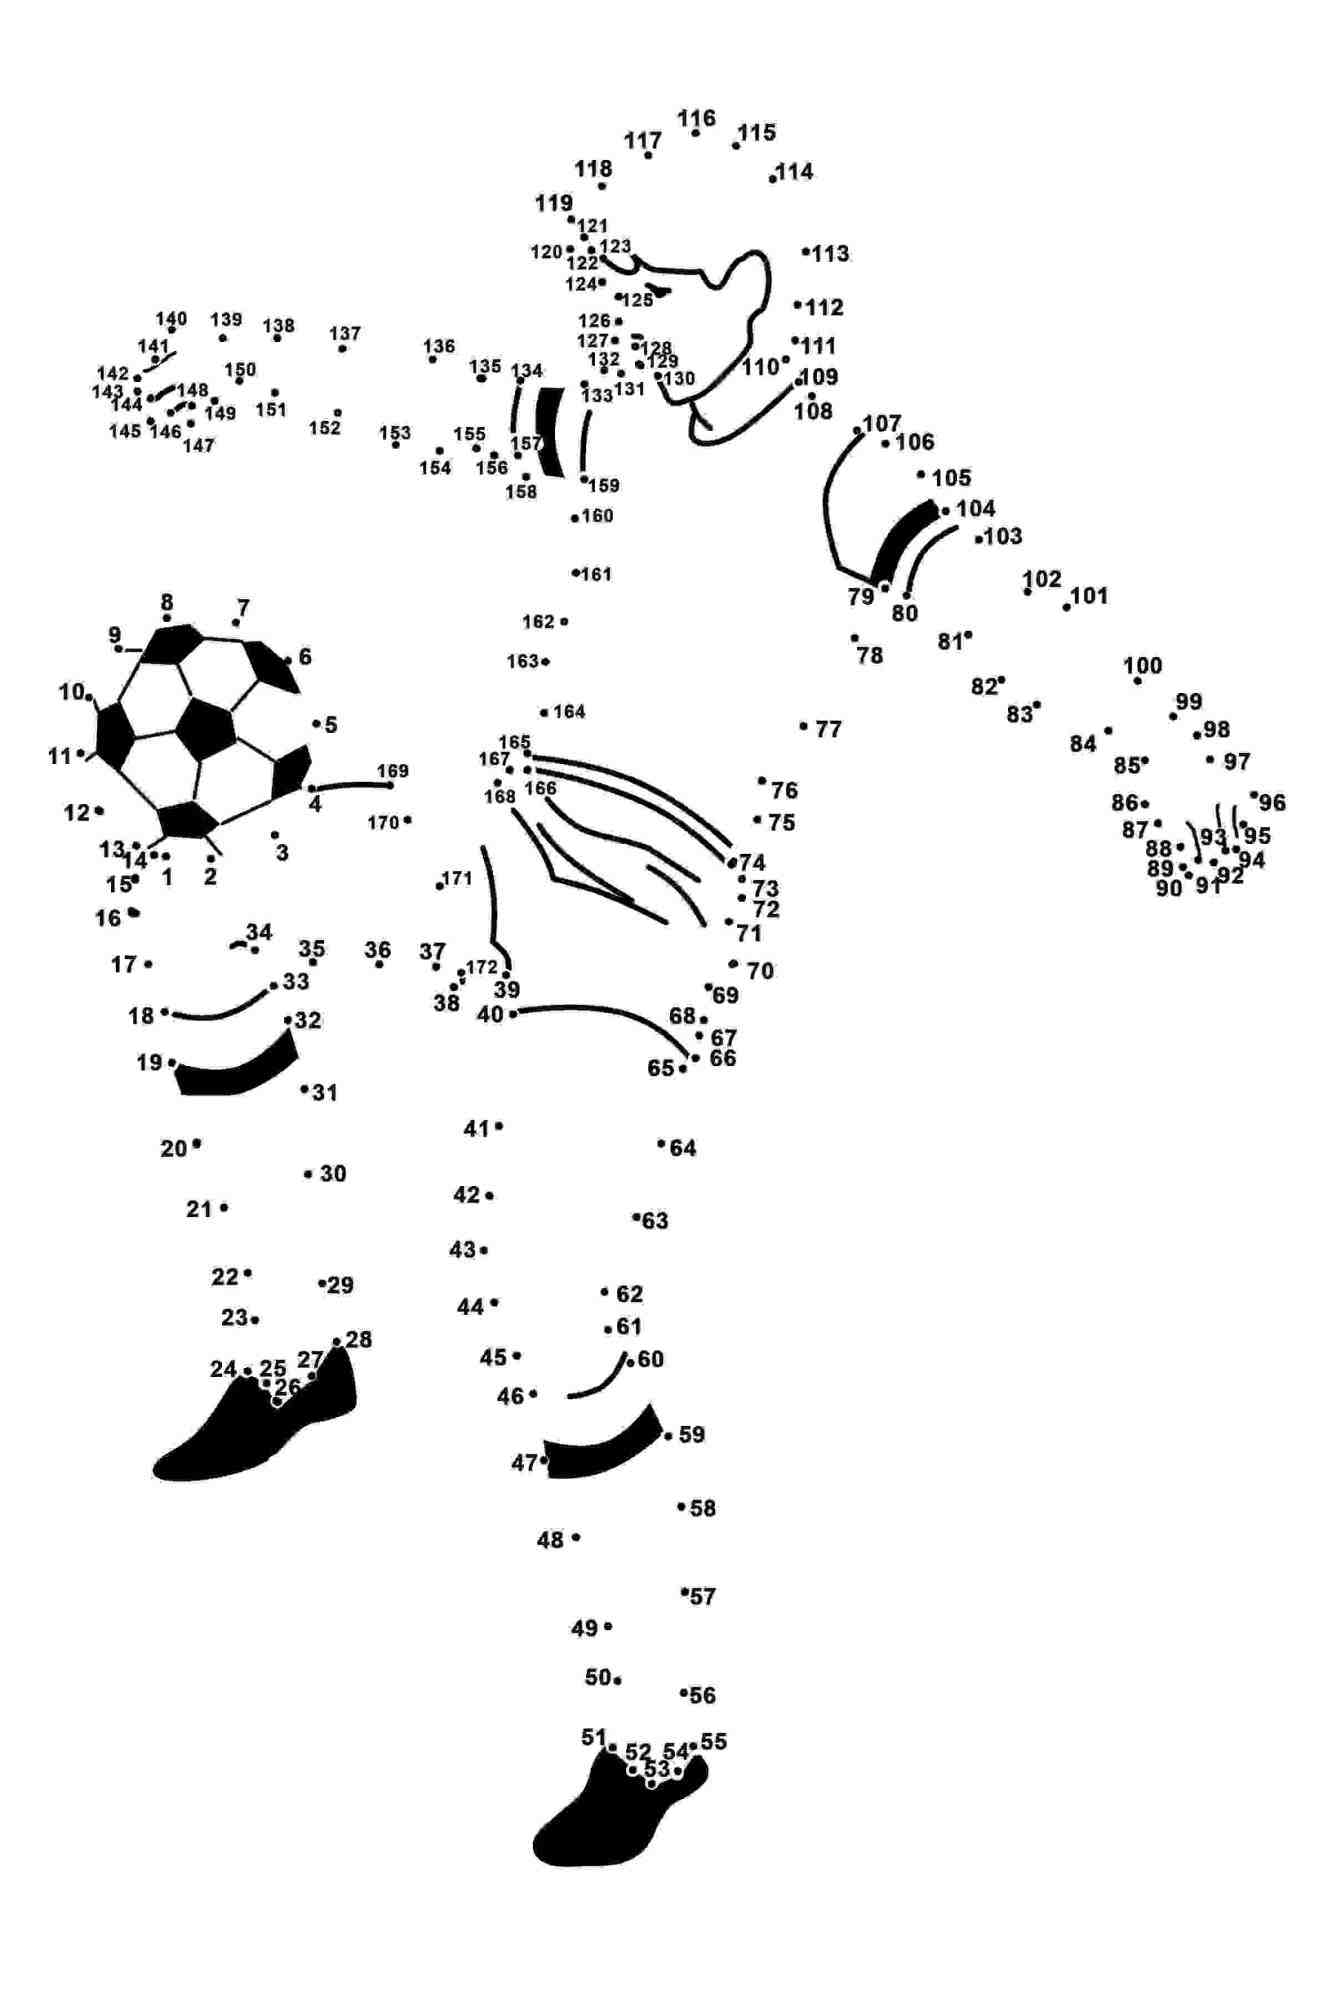 Conecte os pontos que o jogador de futebol joga com a bola